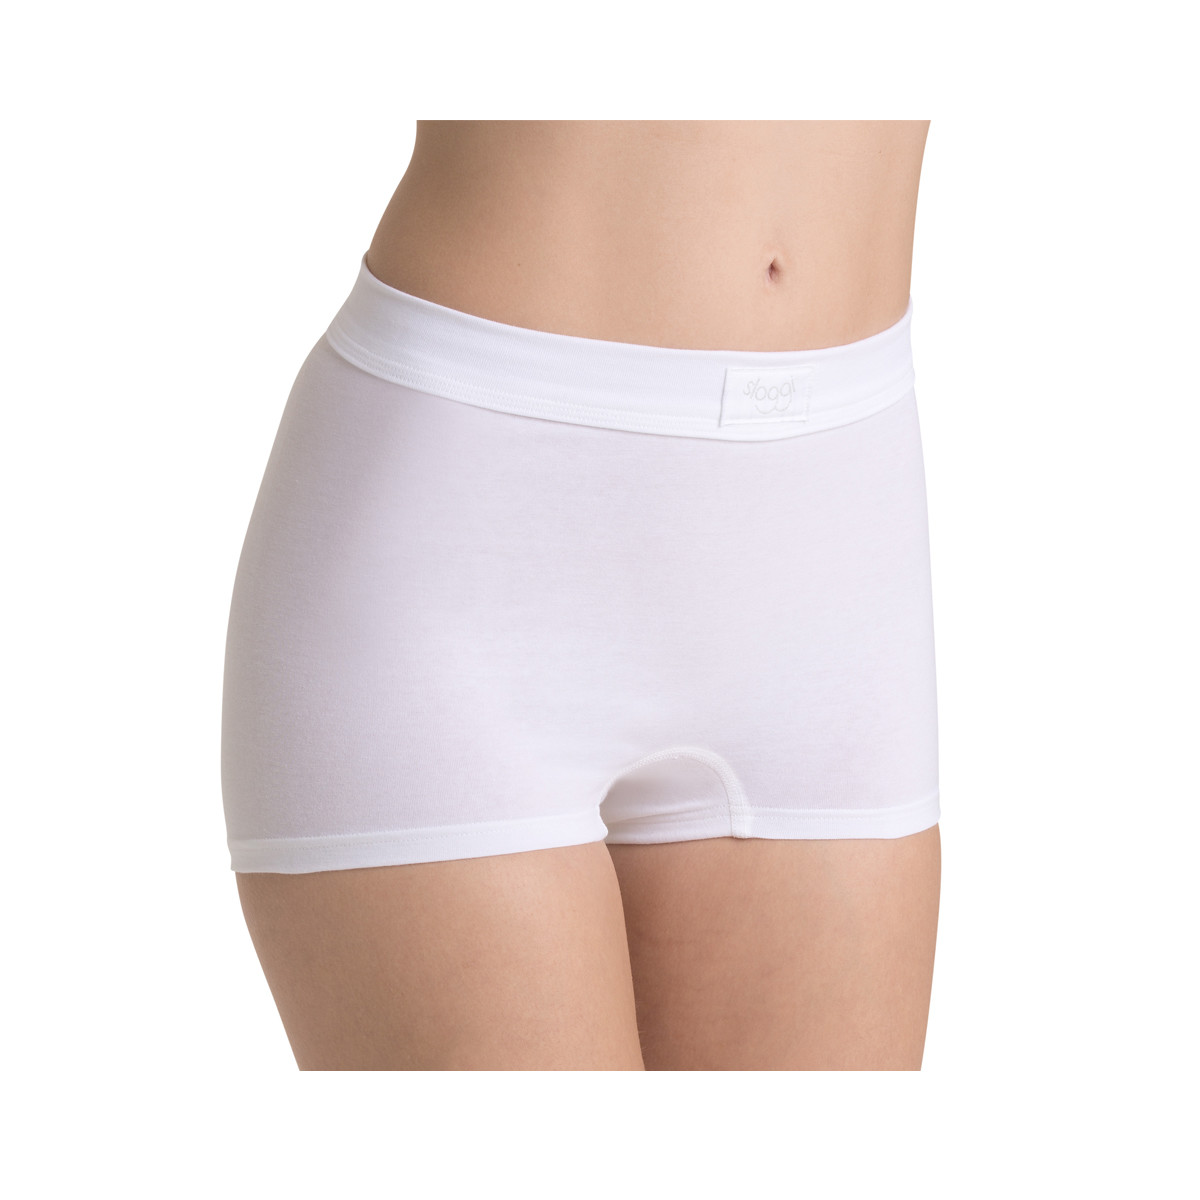 Sloggi Double Comfort Shorts, Farve: Hvid, Størrelse: 40, Dame